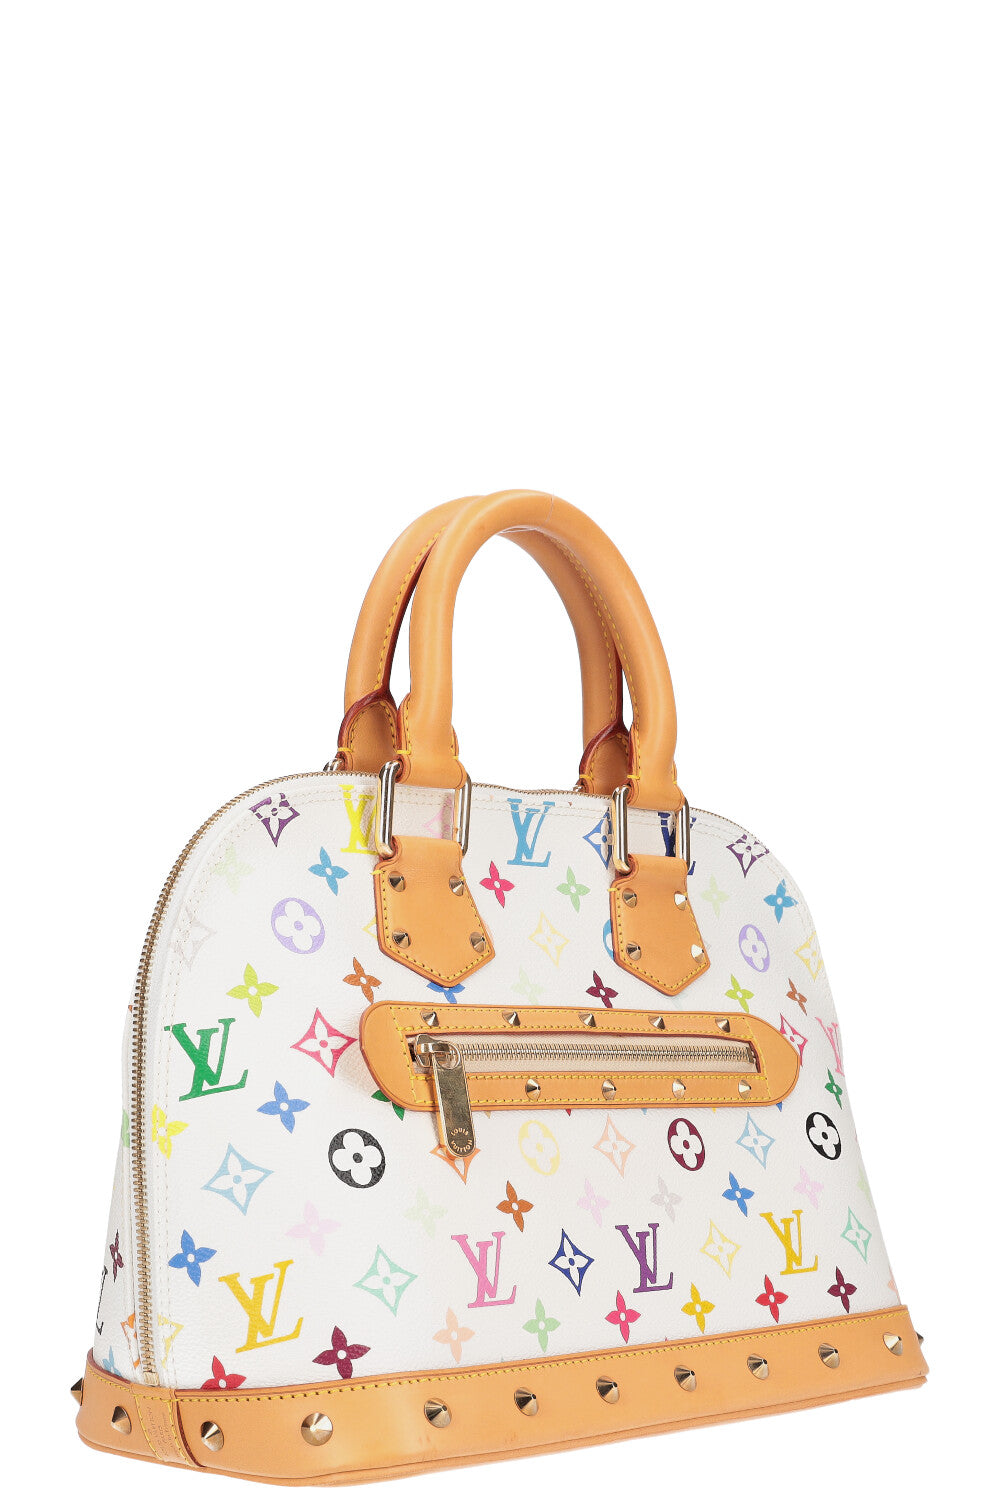 Louis Vuitton Alma ”Murakami” handbag